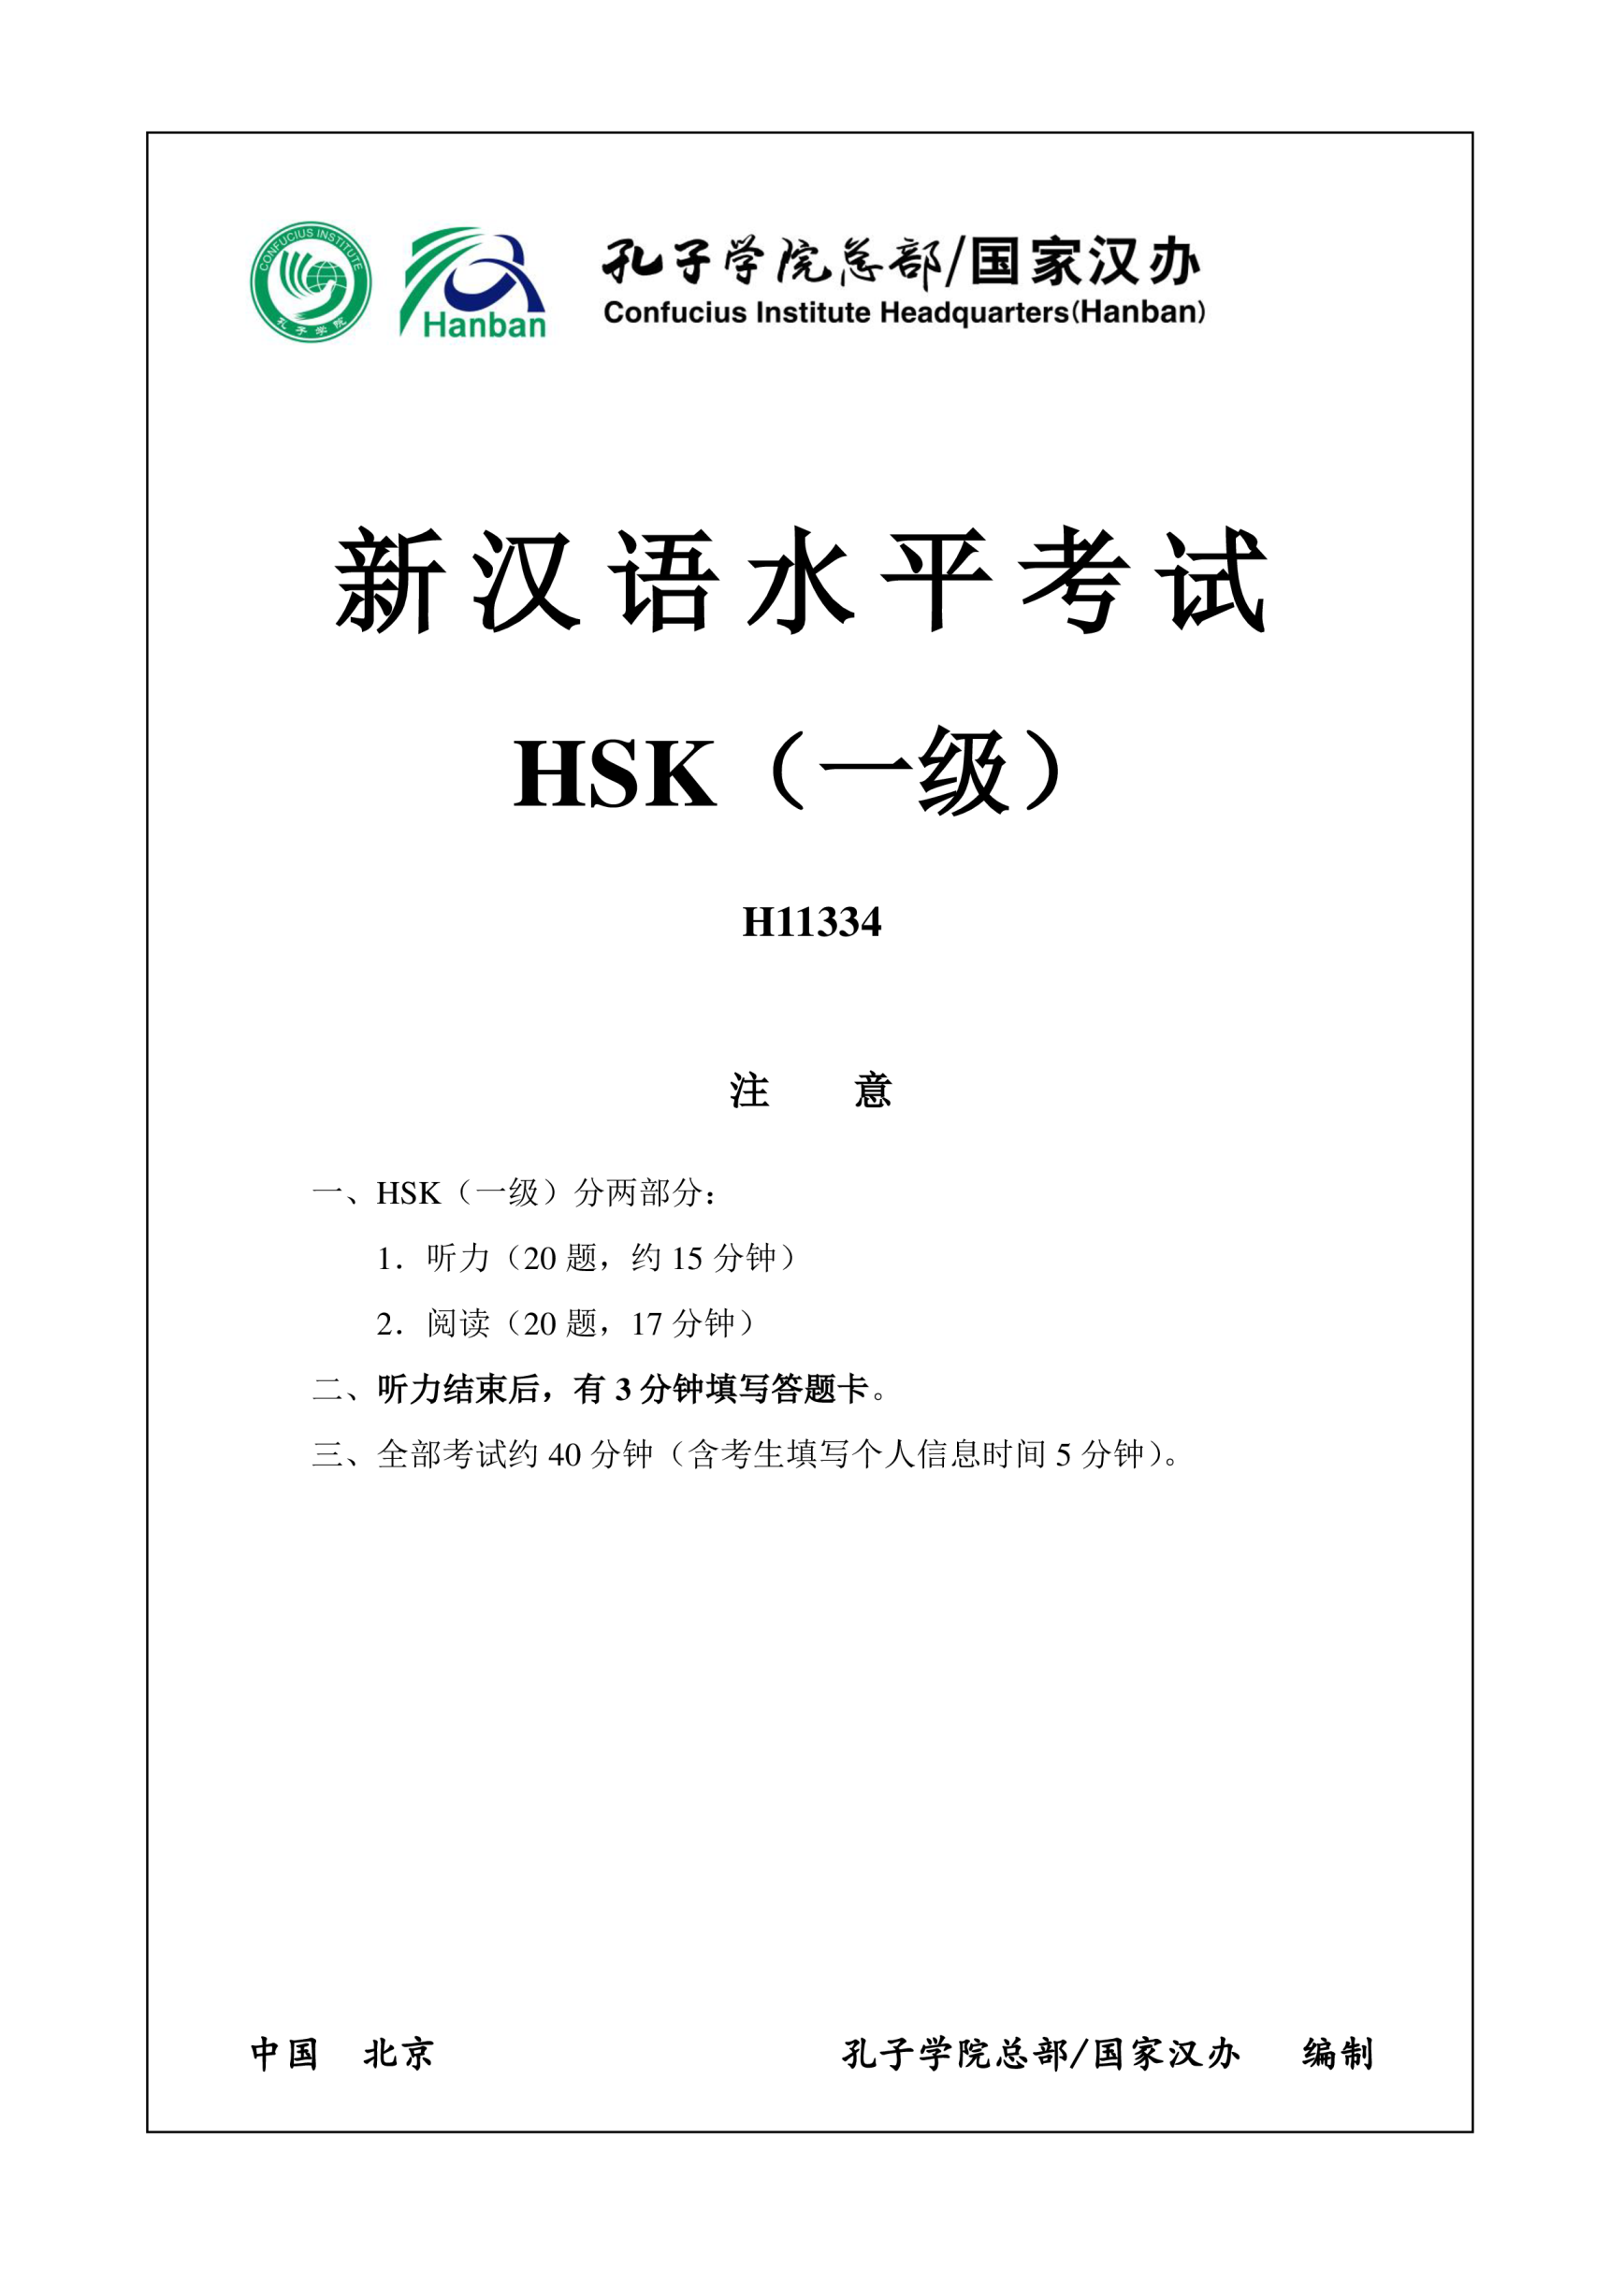 Vorschaubild der VorlageHSK1 Chinese Exam including Answers # HSK1 H11334